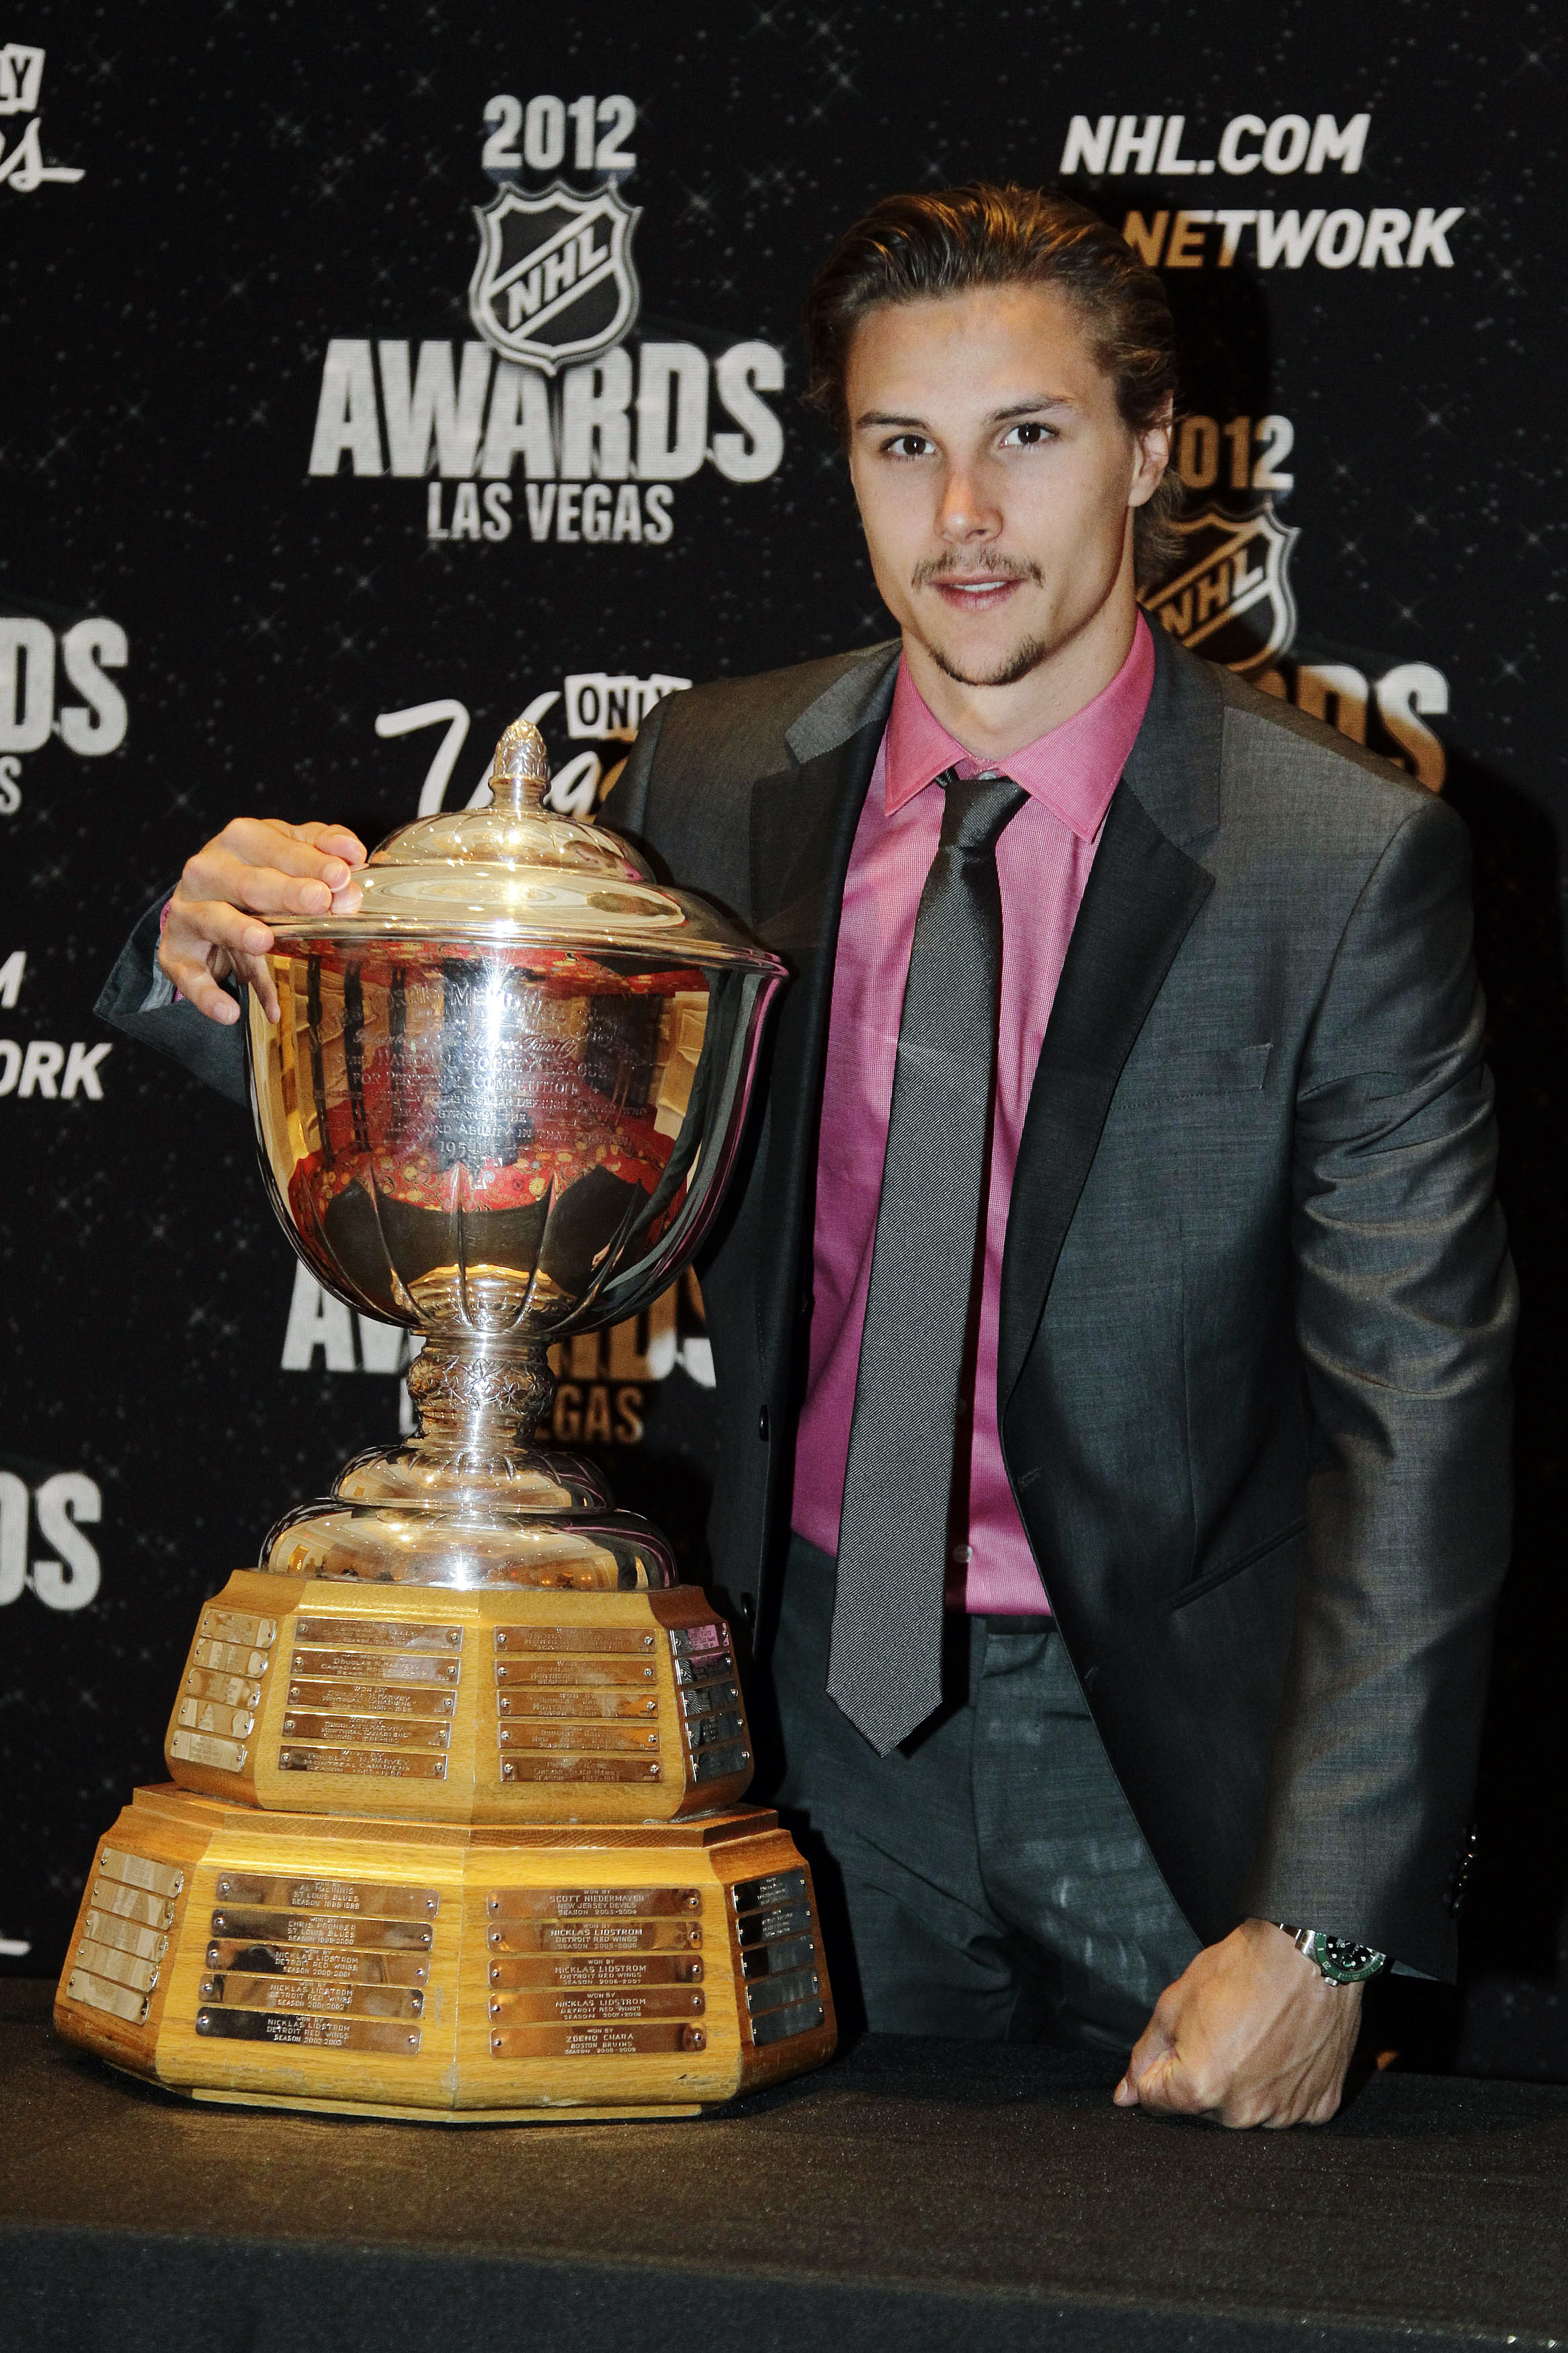 Här är Karlsson med Norris Trophy, priset för årets bästa back i NHL.